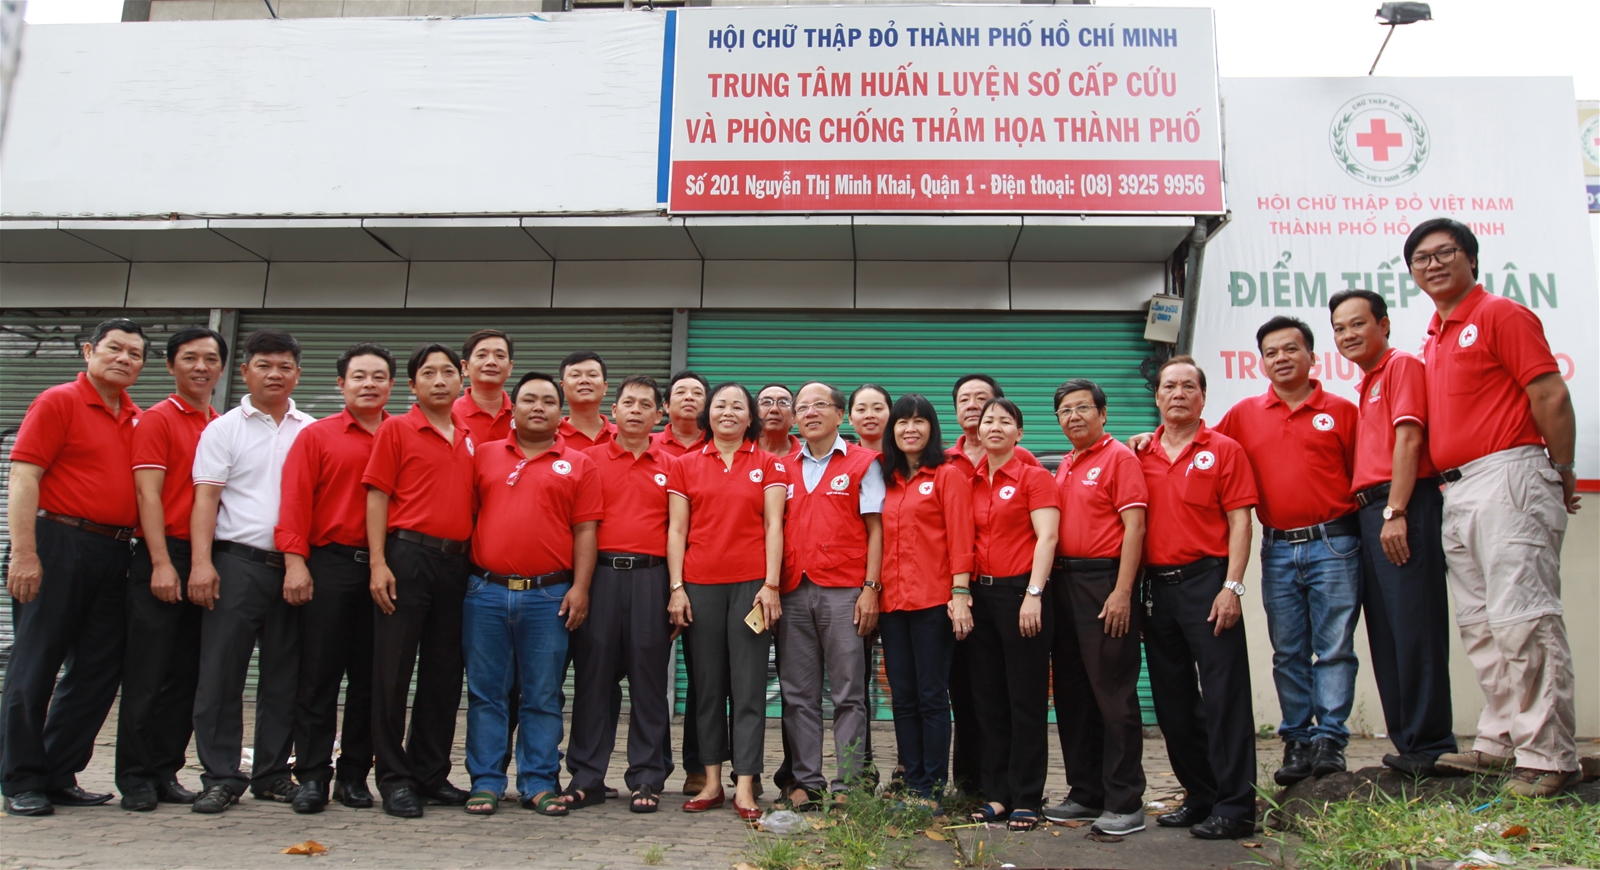 Huấn luyện sơ cấp cứu cho tập huấn viên về 24 kỹ thuật sơ cấp cứu nâng cao TP. Hồ Chí Minh